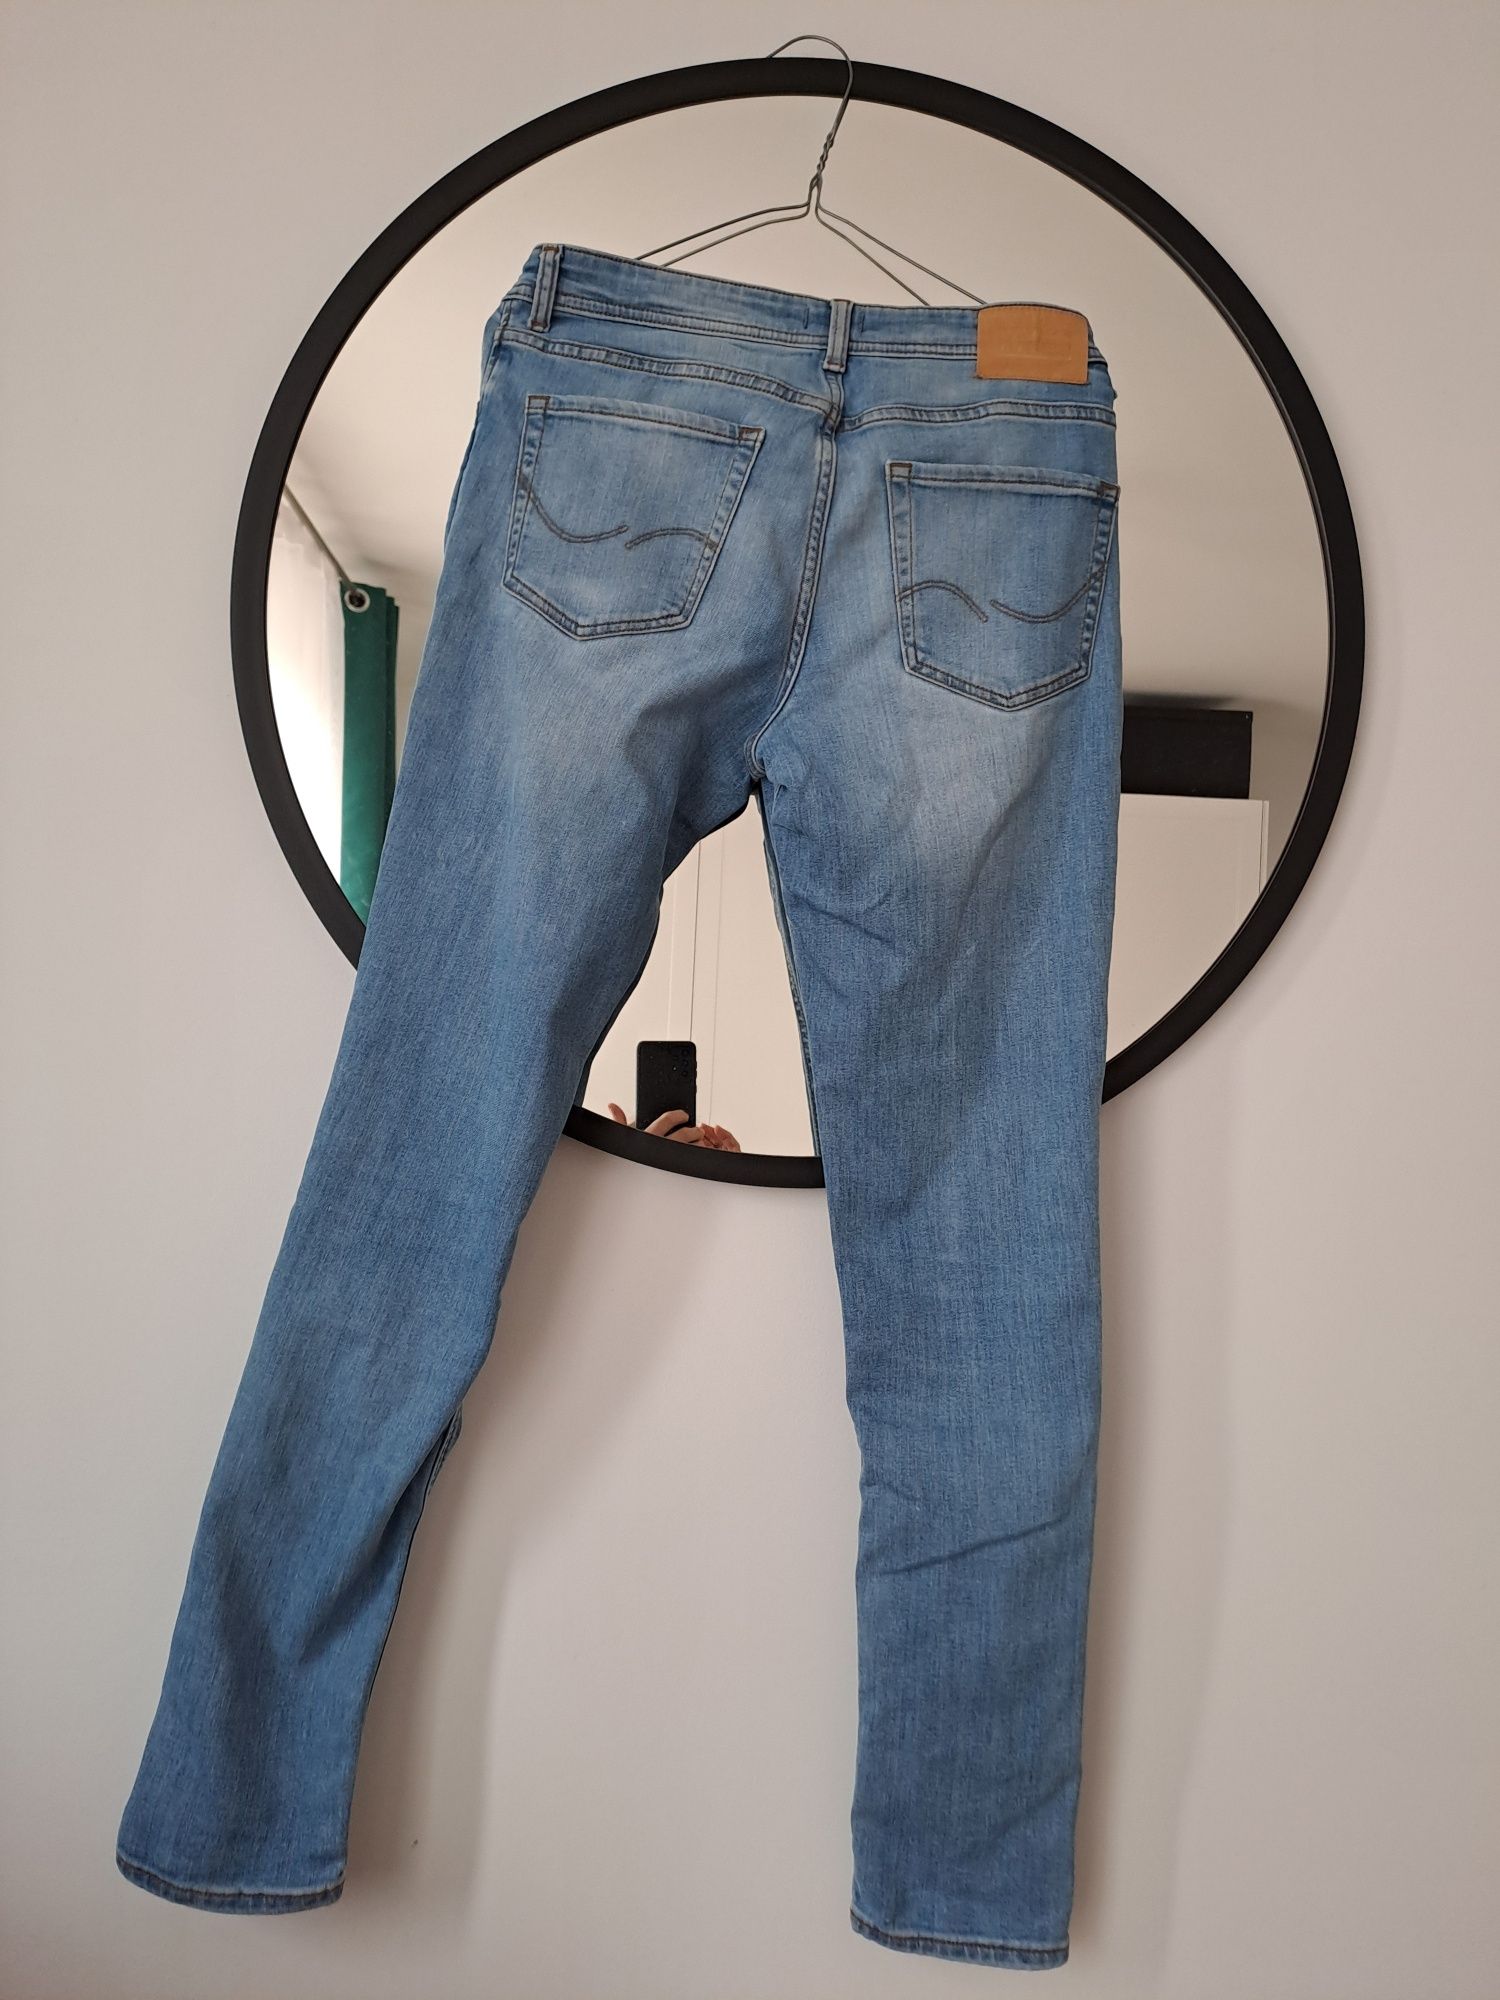 Spodnie męskie jeans rozm S